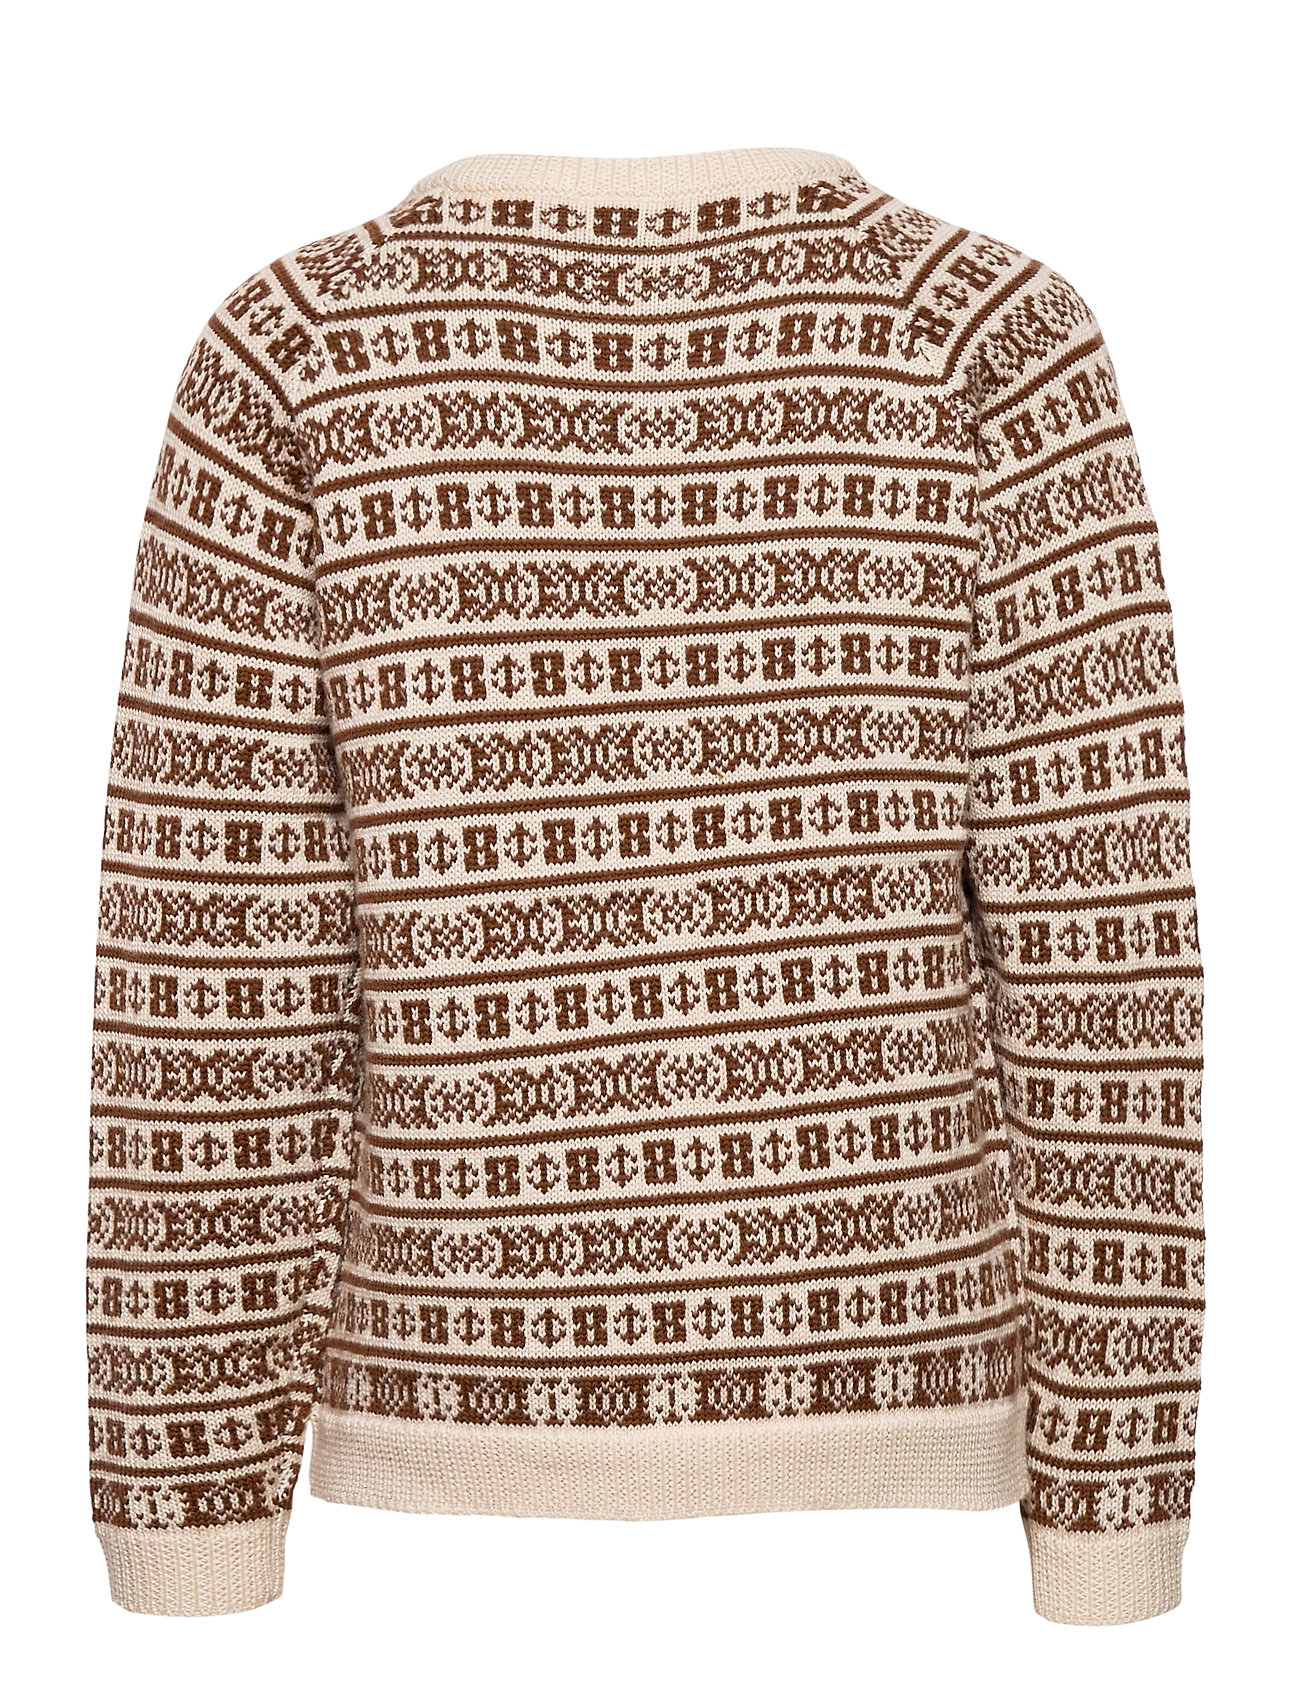 pullovers – Jaquard Sweater Pullover Striktrøje Creme til børn i ECRU/UMBER -